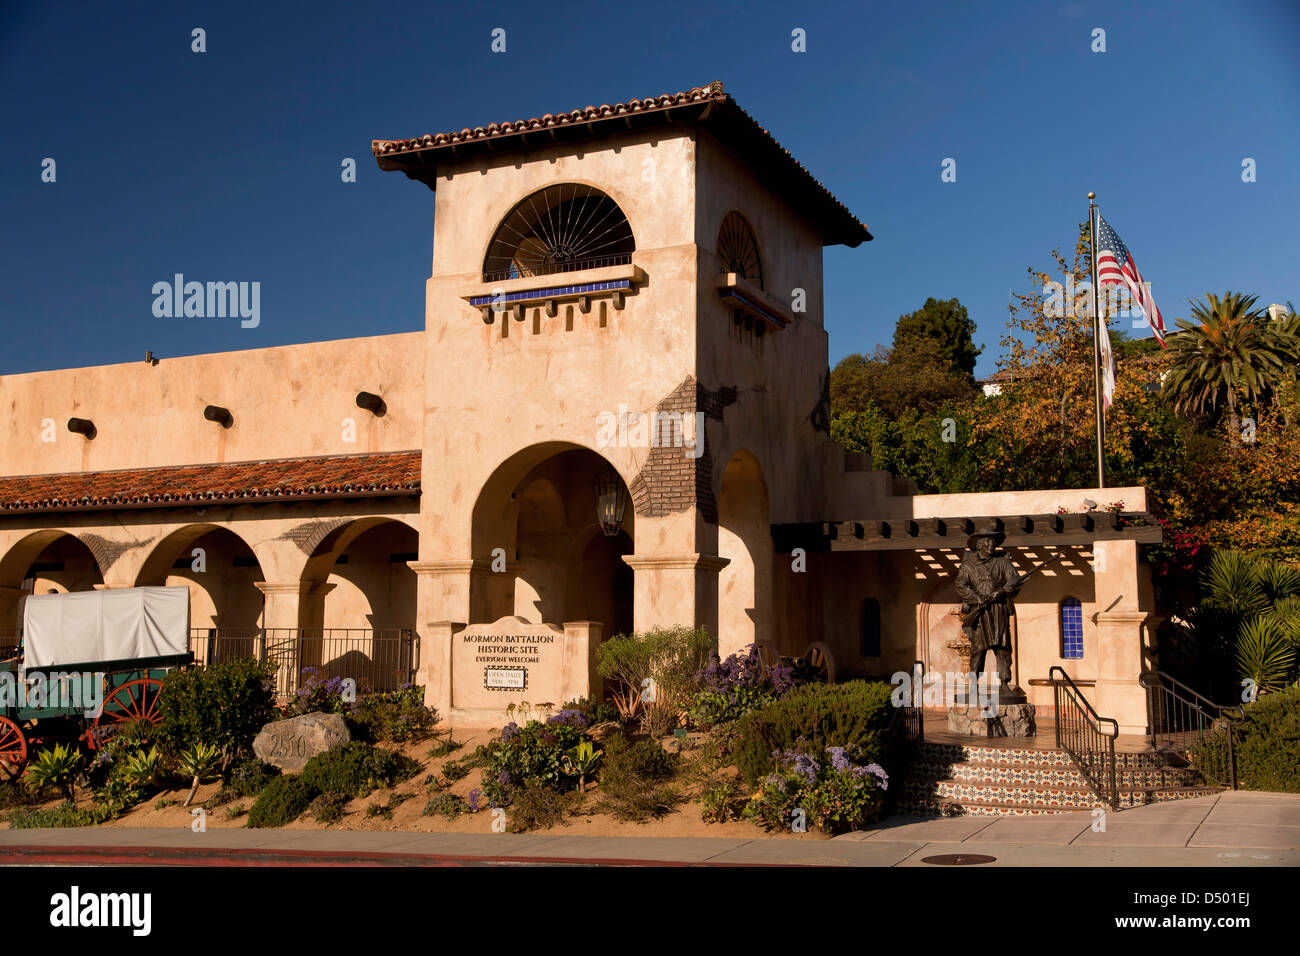 Mormone-Bataillon historische Stätte und Besucherzentrum, Old Town State Park, San Diego, Kalifornien, Vereinigte Staaten von Amerika, USA Stockfoto